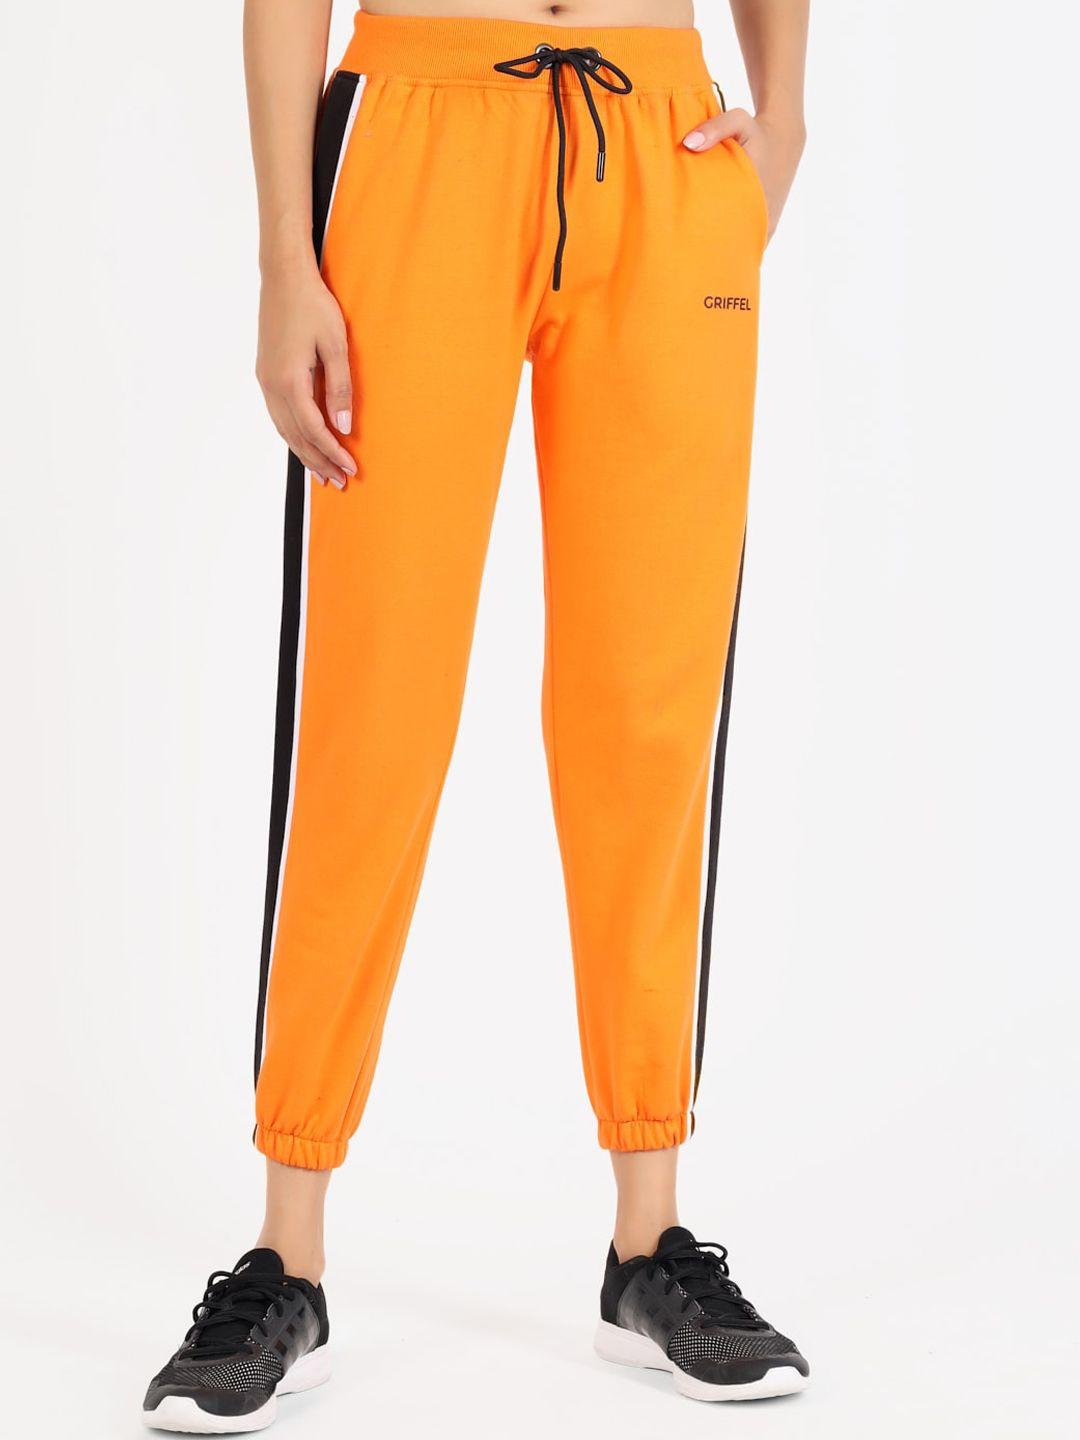 griffel women orange solid joggers